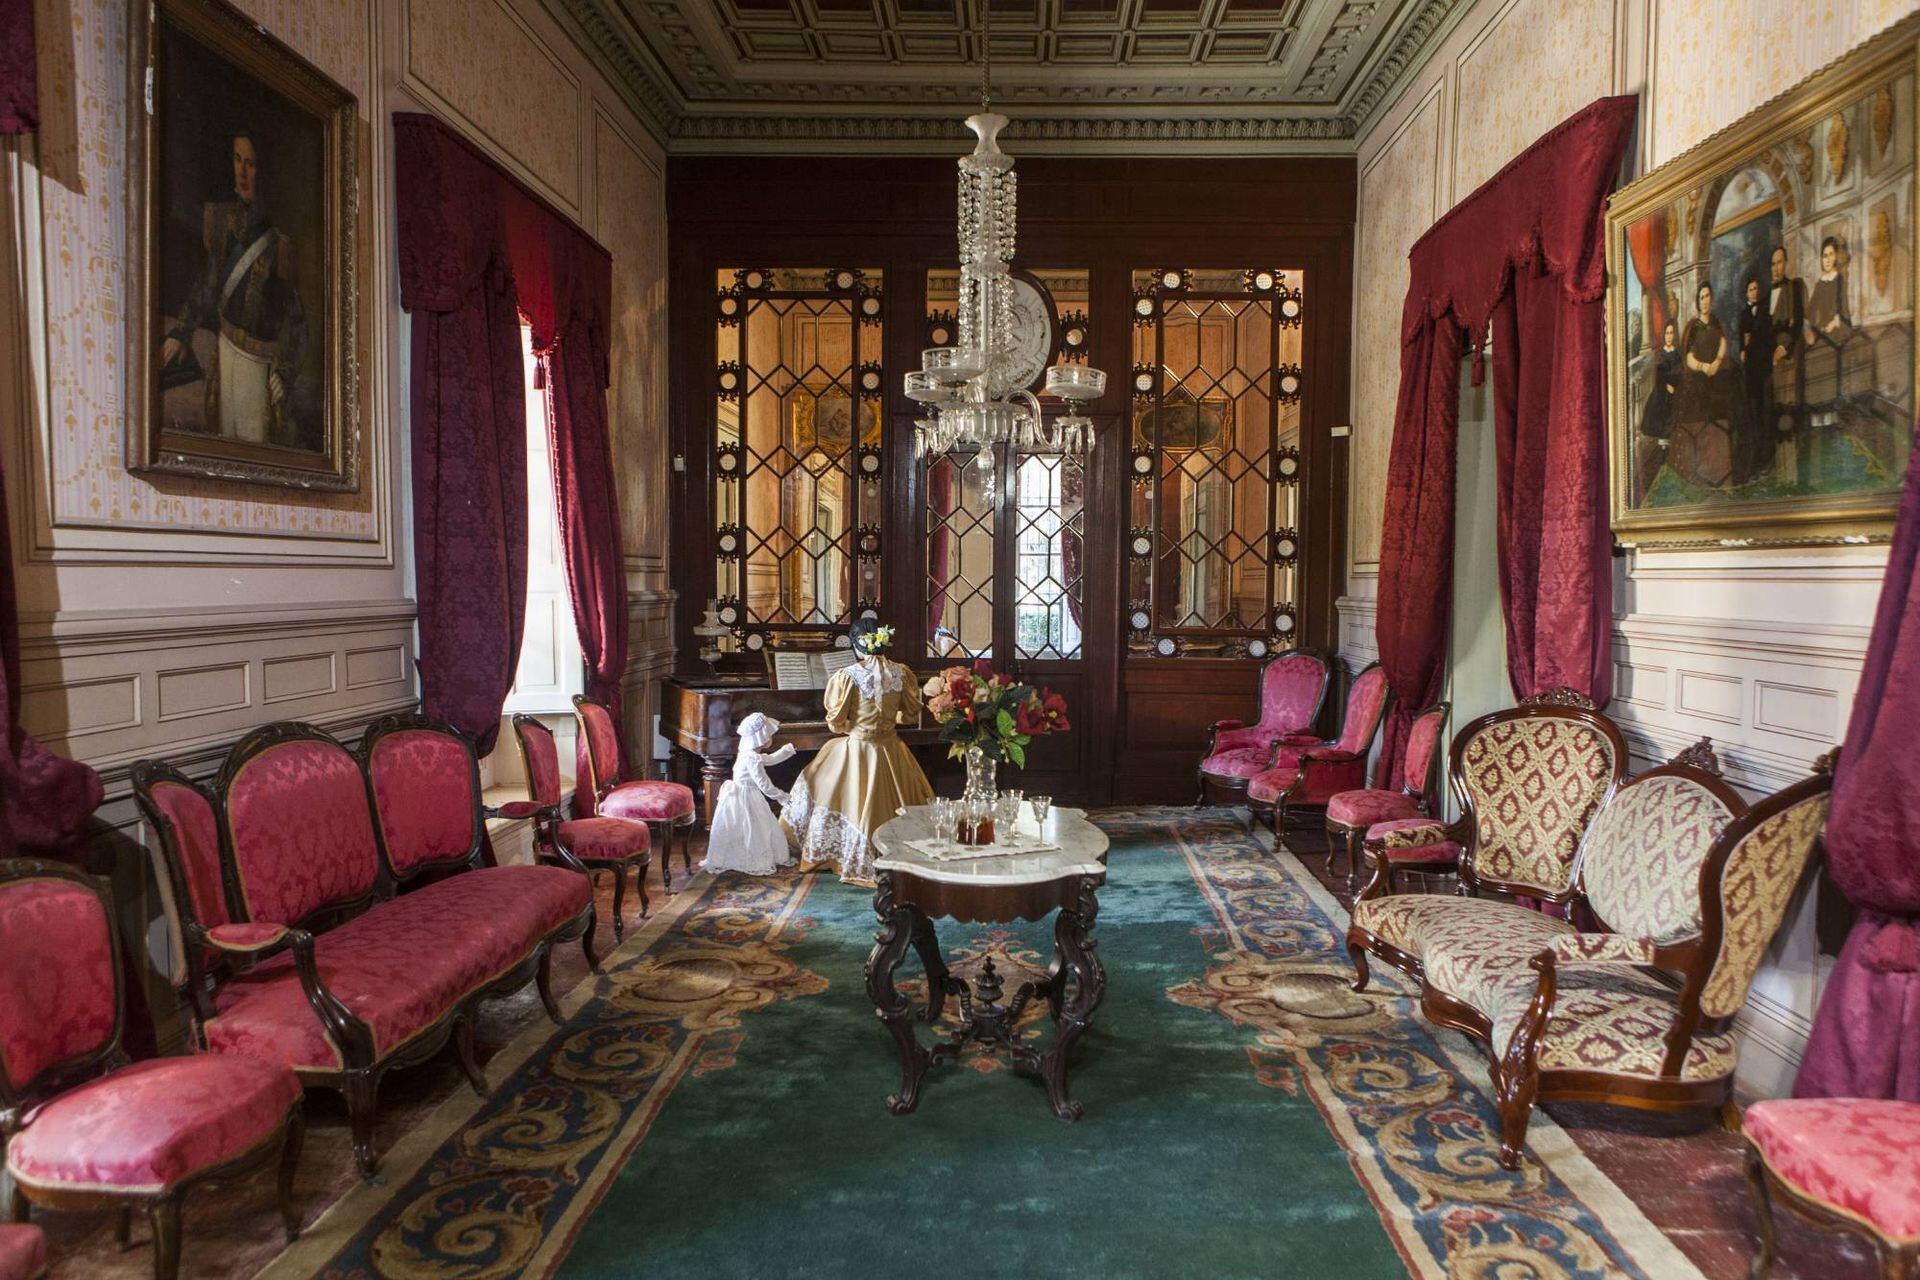 Un salón del palacio exhibe la riqueza criolla de la ambientación interior muy similar a las casas nobles europeas.